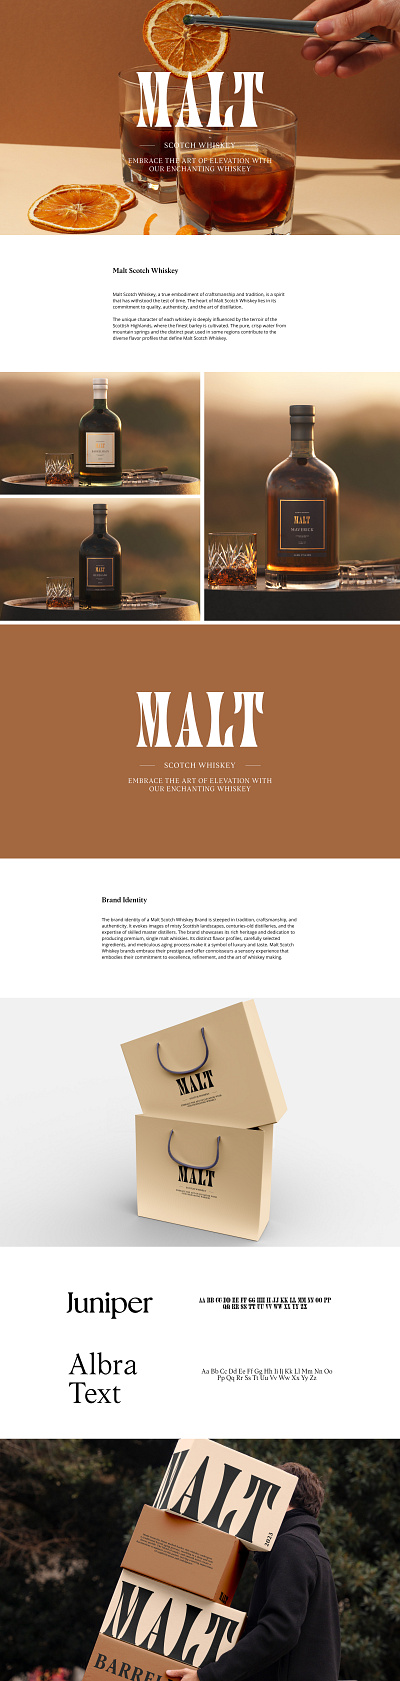 Malt | Branding branding logo